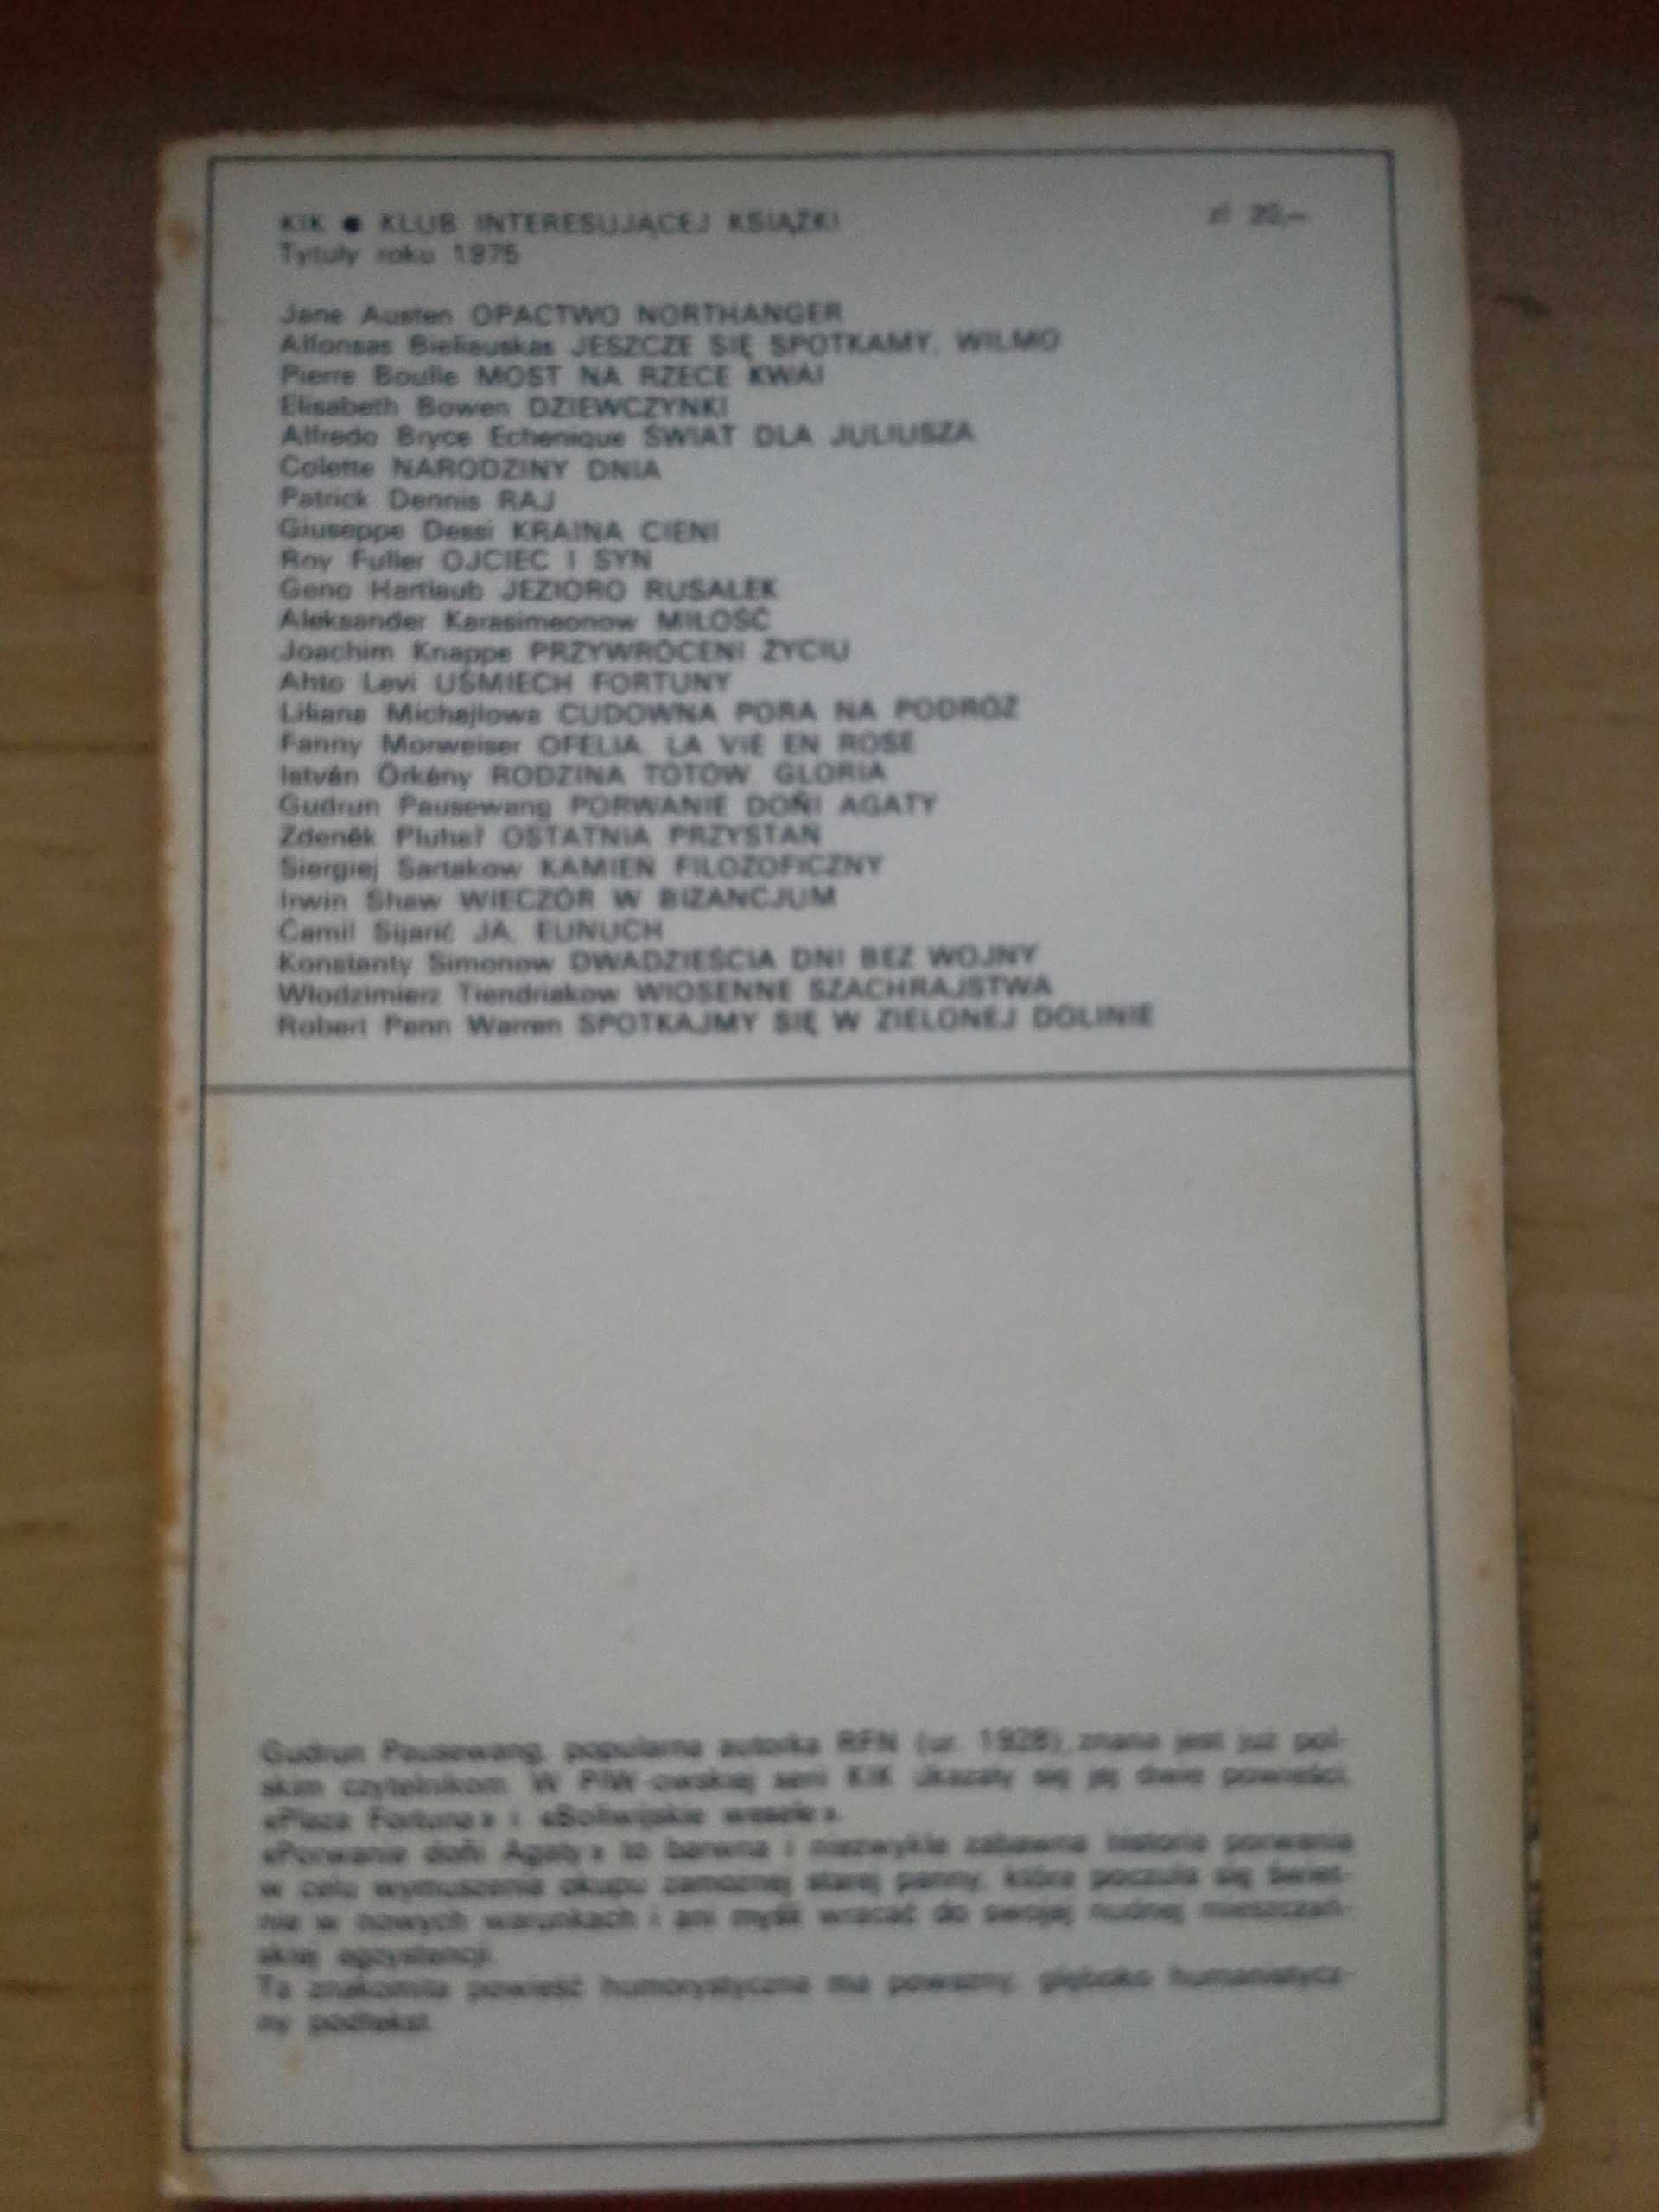 Porwanie Doni Agaty, Gudrun Pausewang, PIW, wydanie I, 1975r.